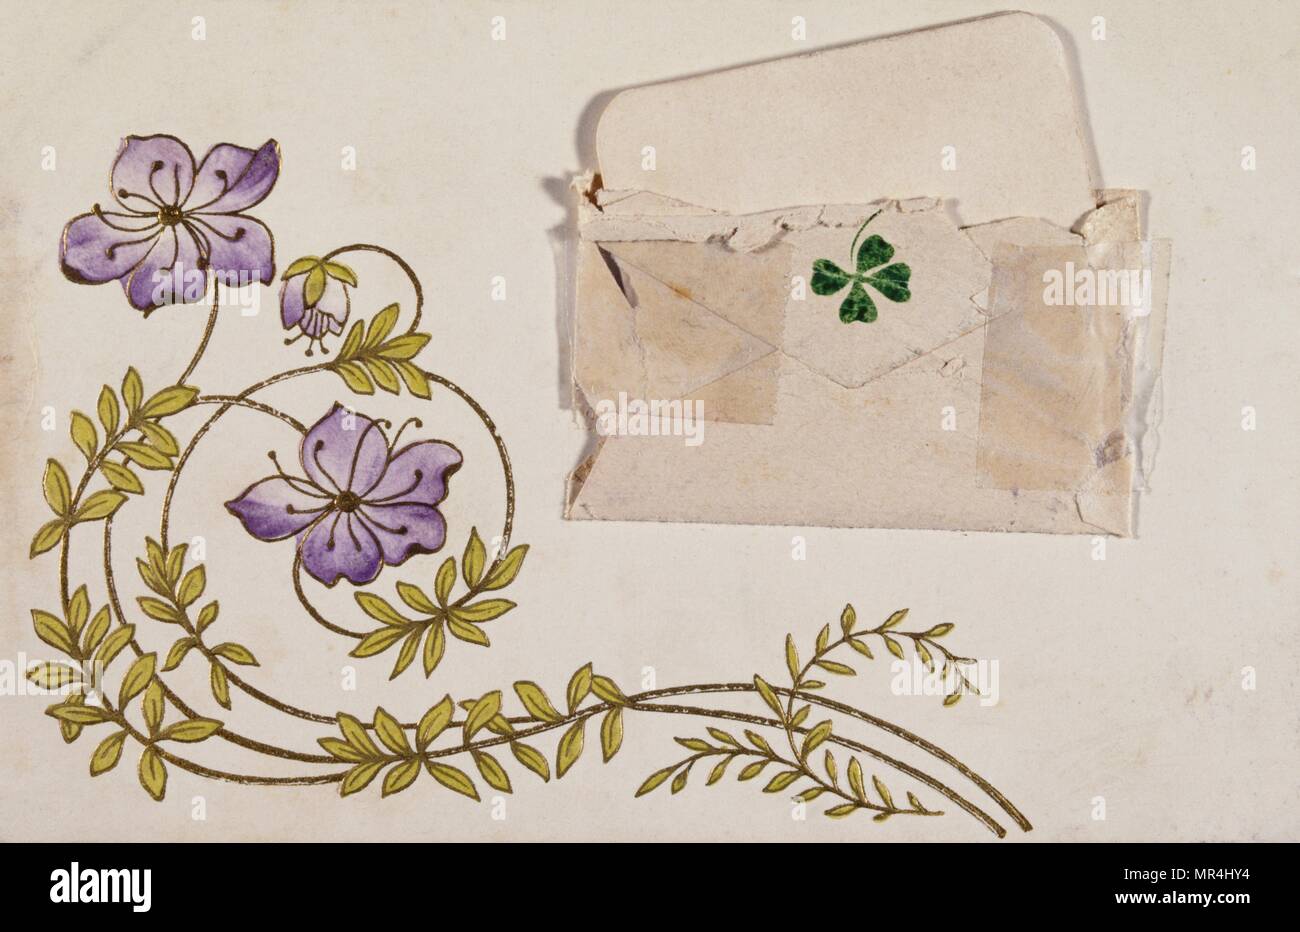 Vintage francese cartolina illustrata con fiori malva e un quattro leaf clover rose. 1900 Foto Stock